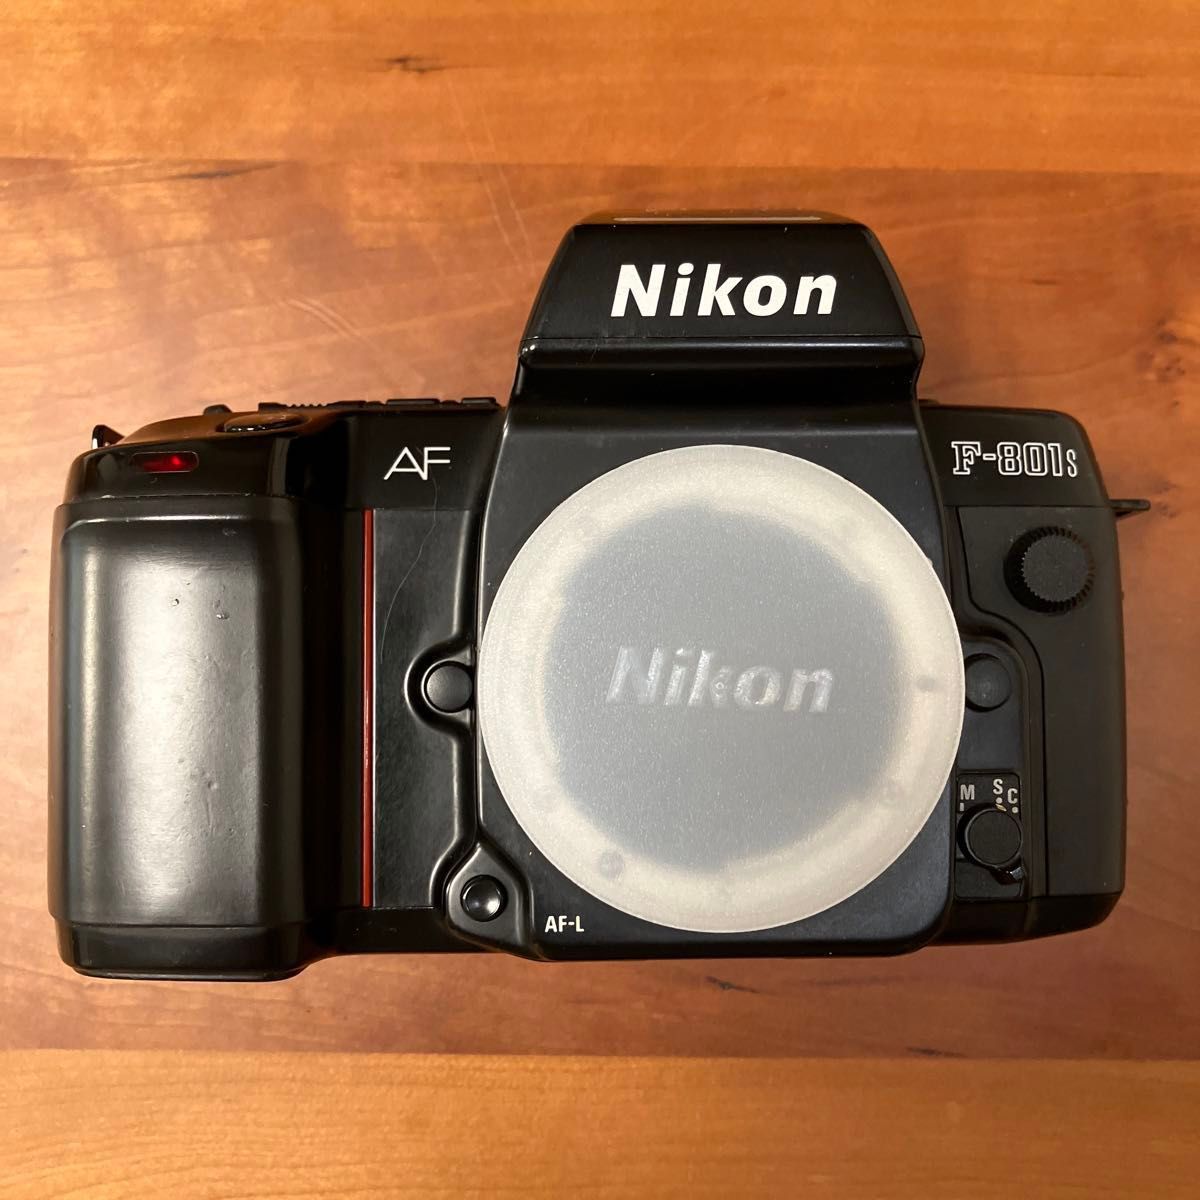 Nikon・ニコン・F-801s・本体のみ・ボディのみ・MF-21・データバック・説明書有り